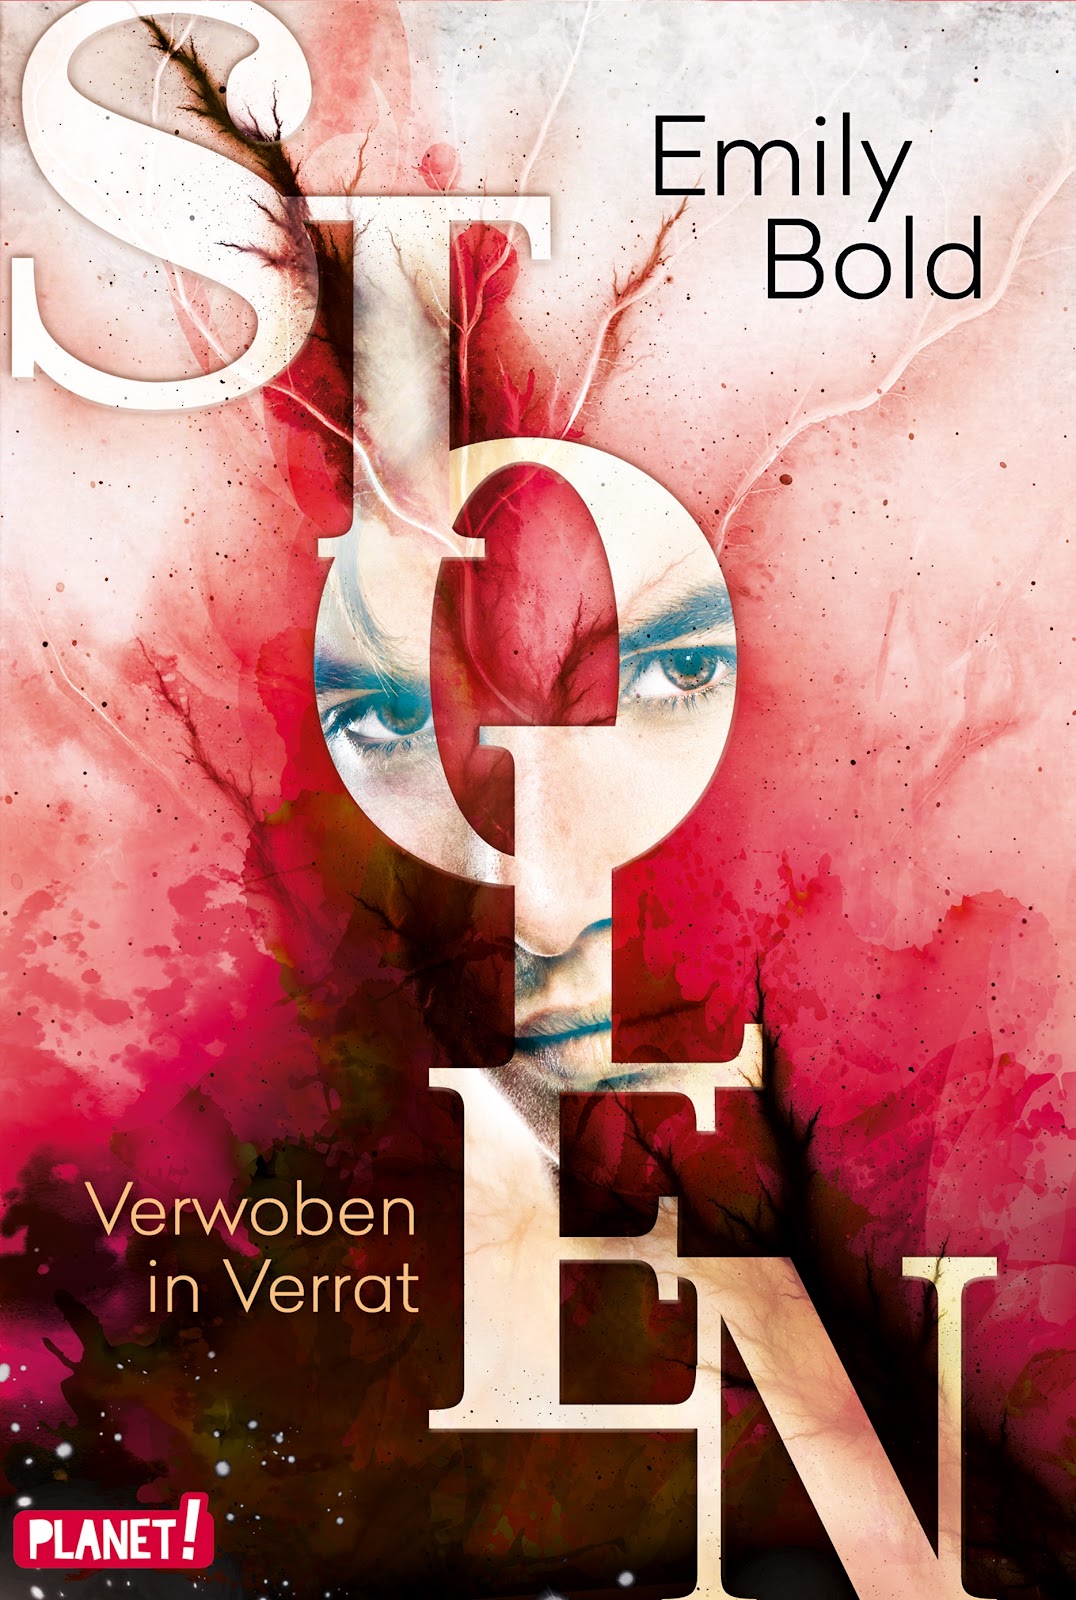 Bücherblog. Rezension. Buchcover. Stolen - Verwoben in Verrat (Band 2) von Emily Bold. Jugendbuch. Fantasy. Planet!.